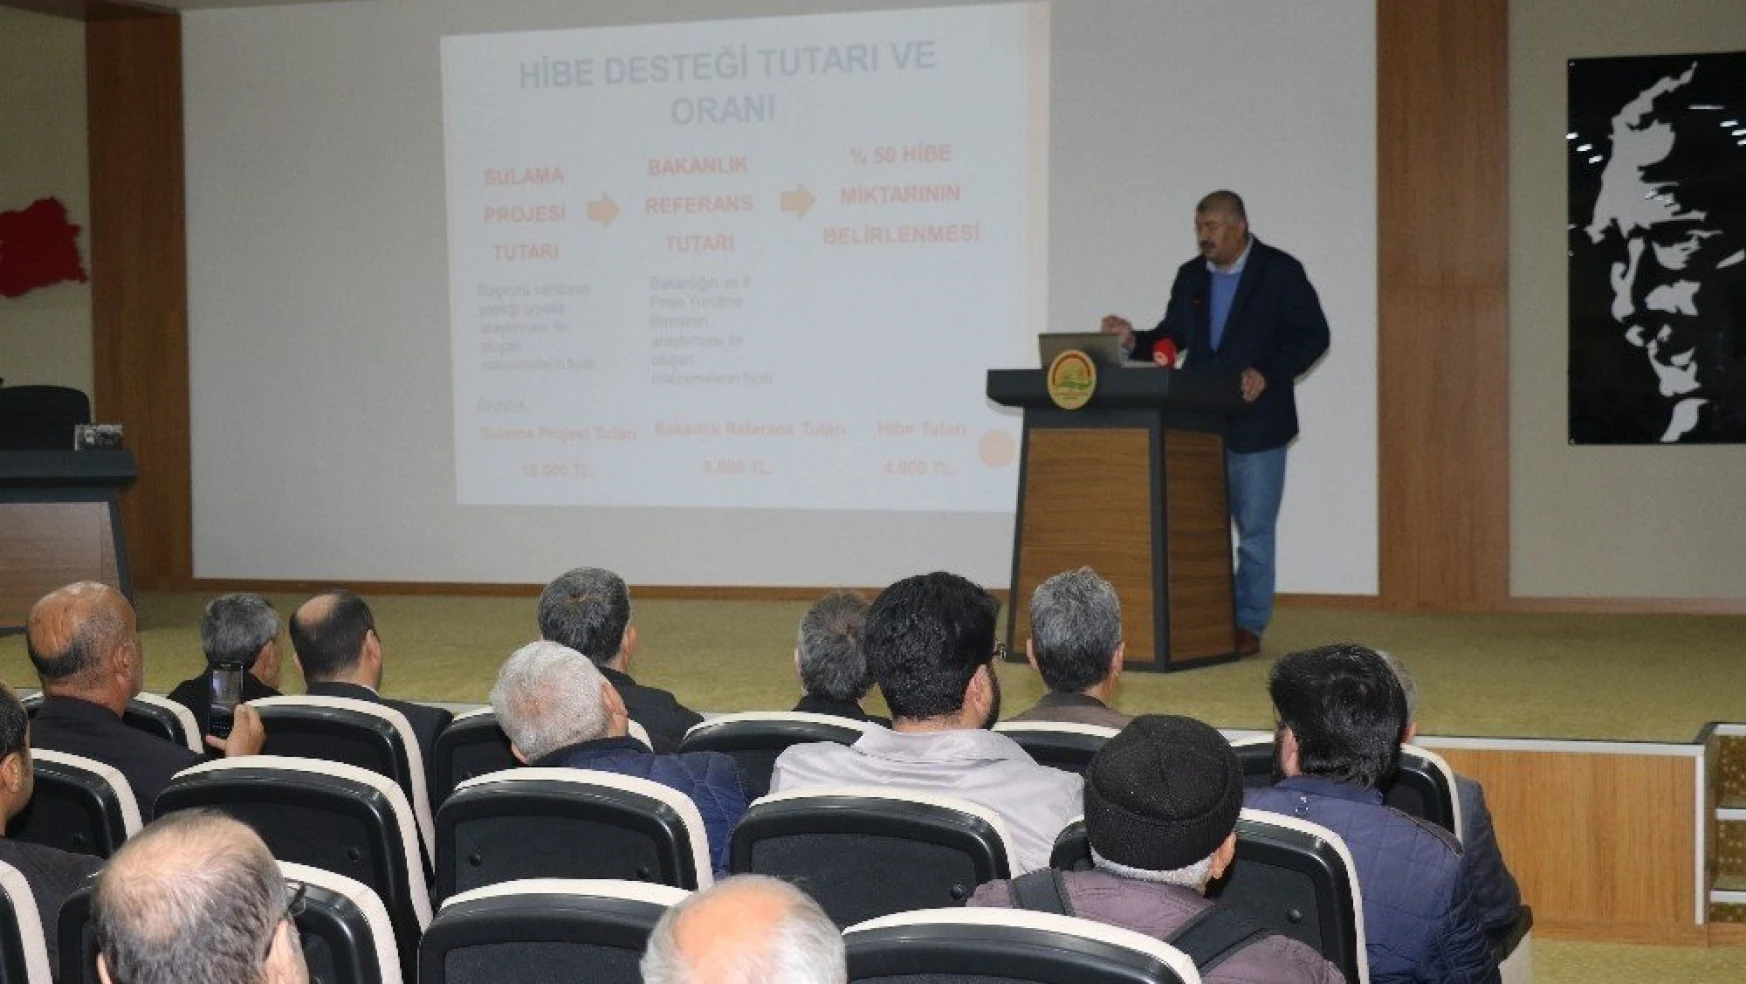 Elazığ'da sulama sistemleri hibe desteğine 114 başvuru